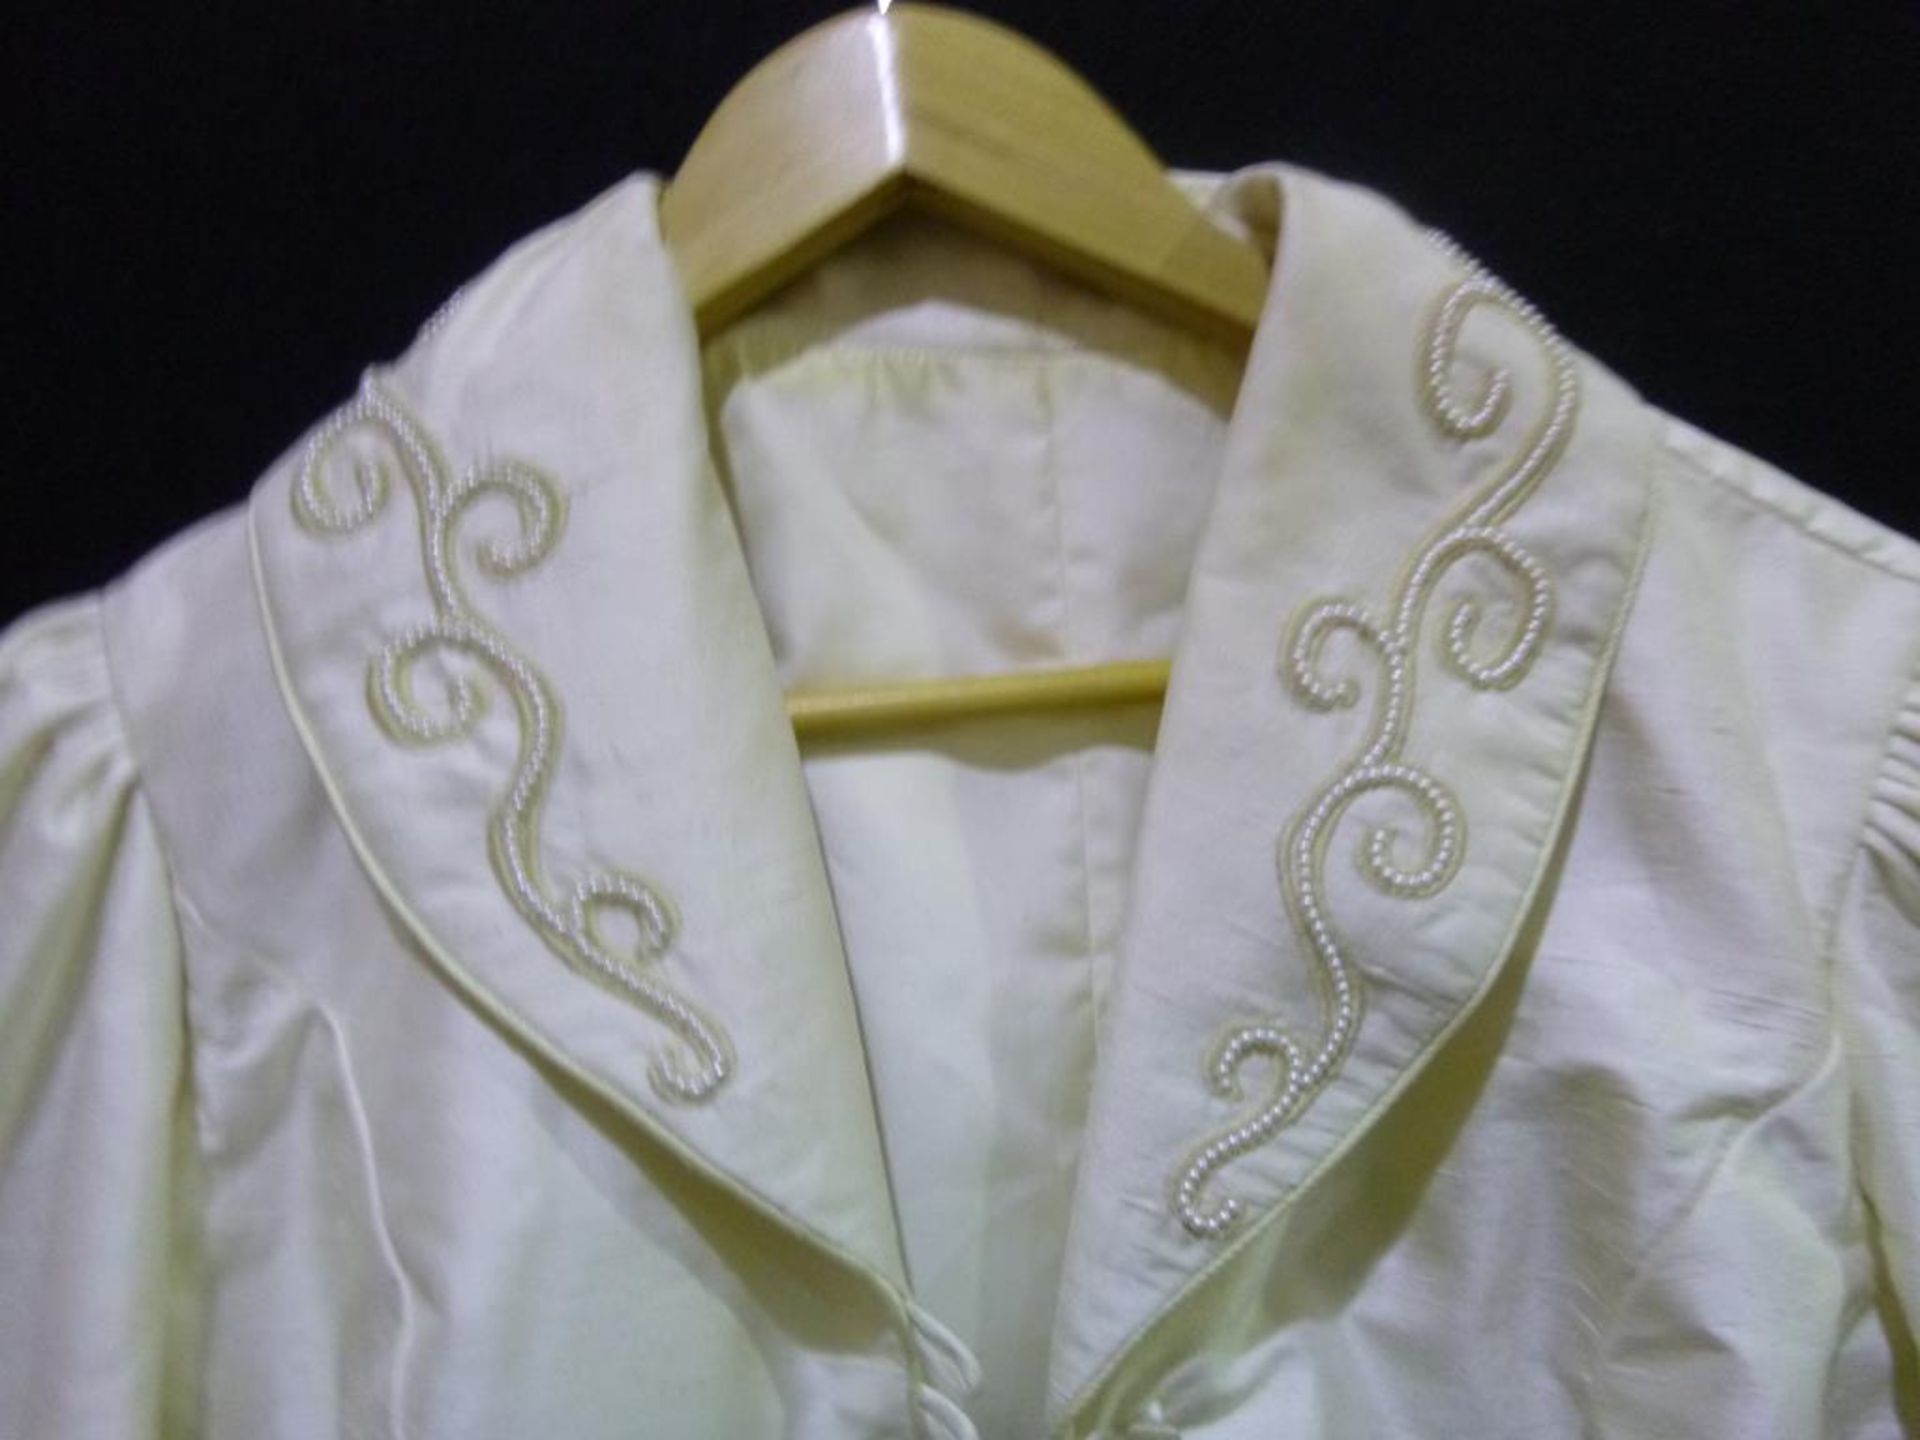 Brides international ivory wedding dress with bolero jacket - Image 10 of 12